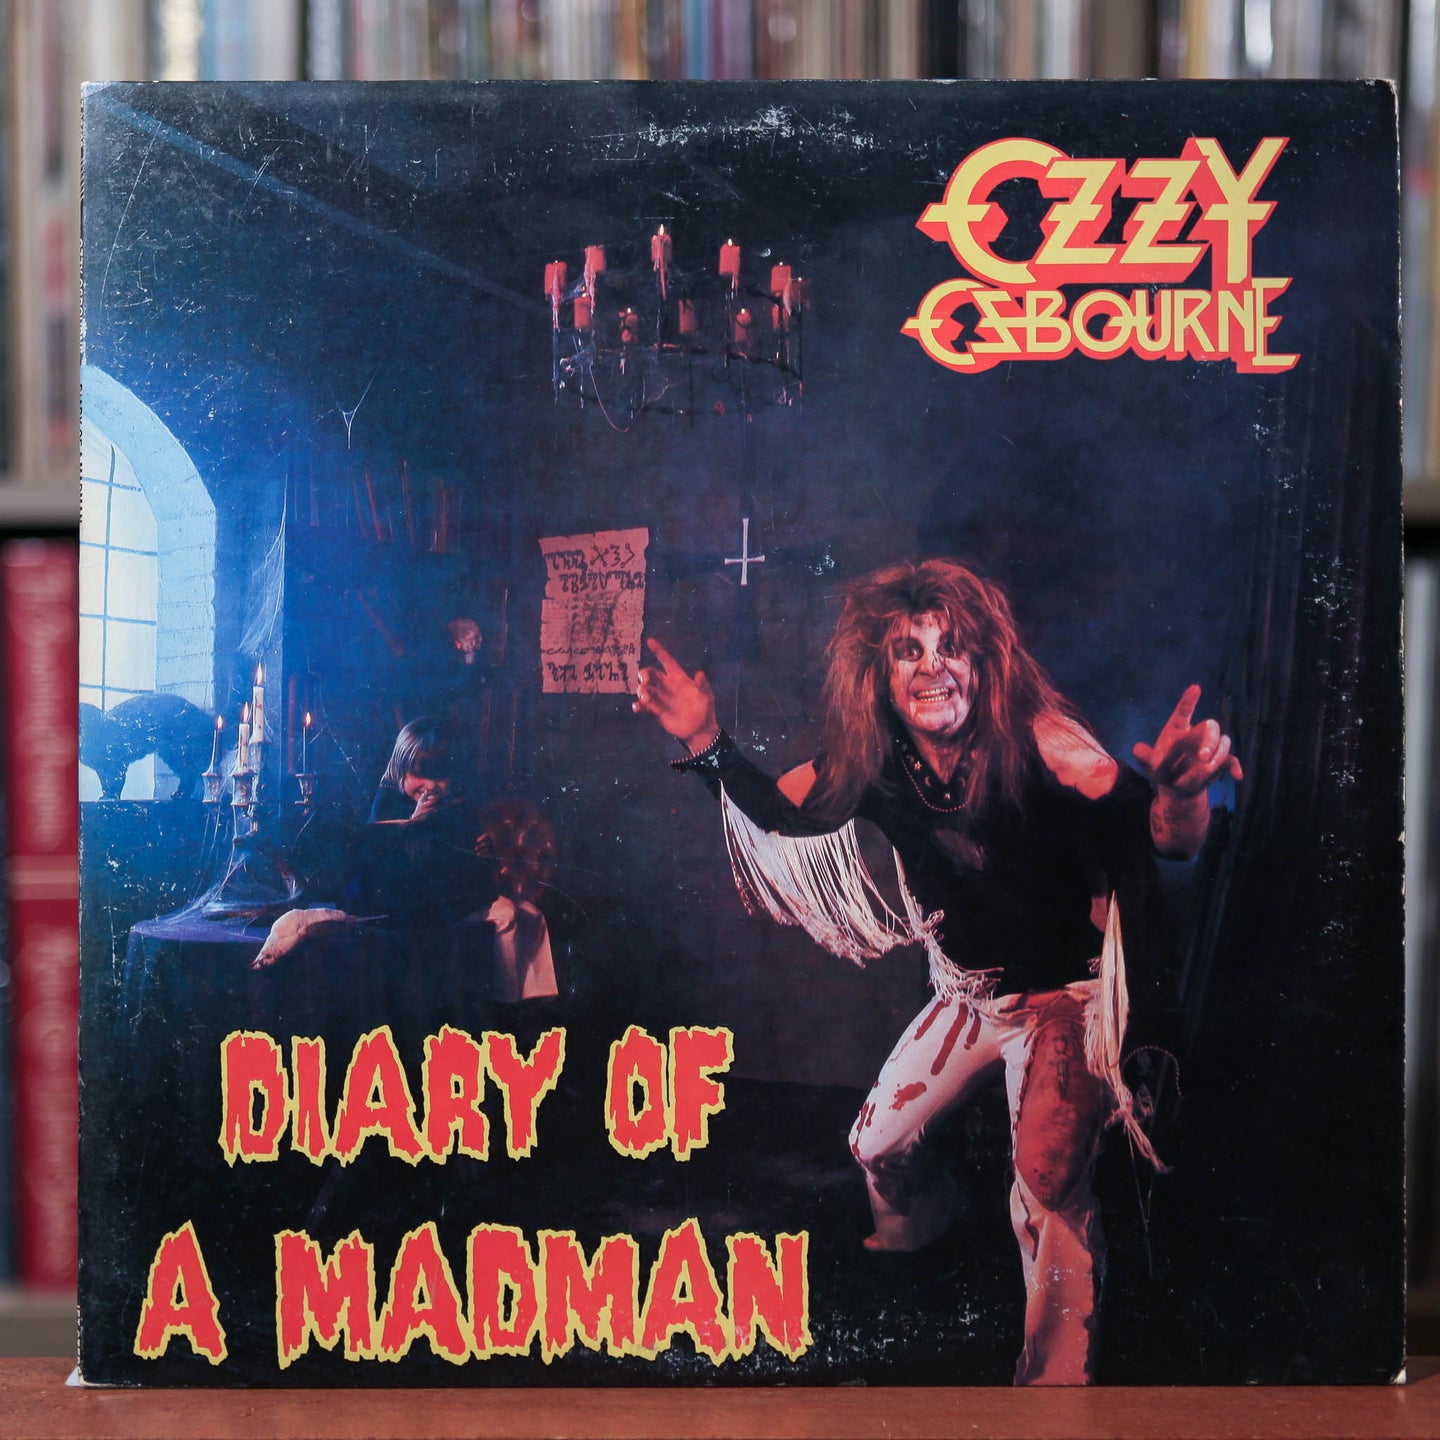 Ozzy Osbourne - Diary of a Madman - 1981 Jet, VG+/VG